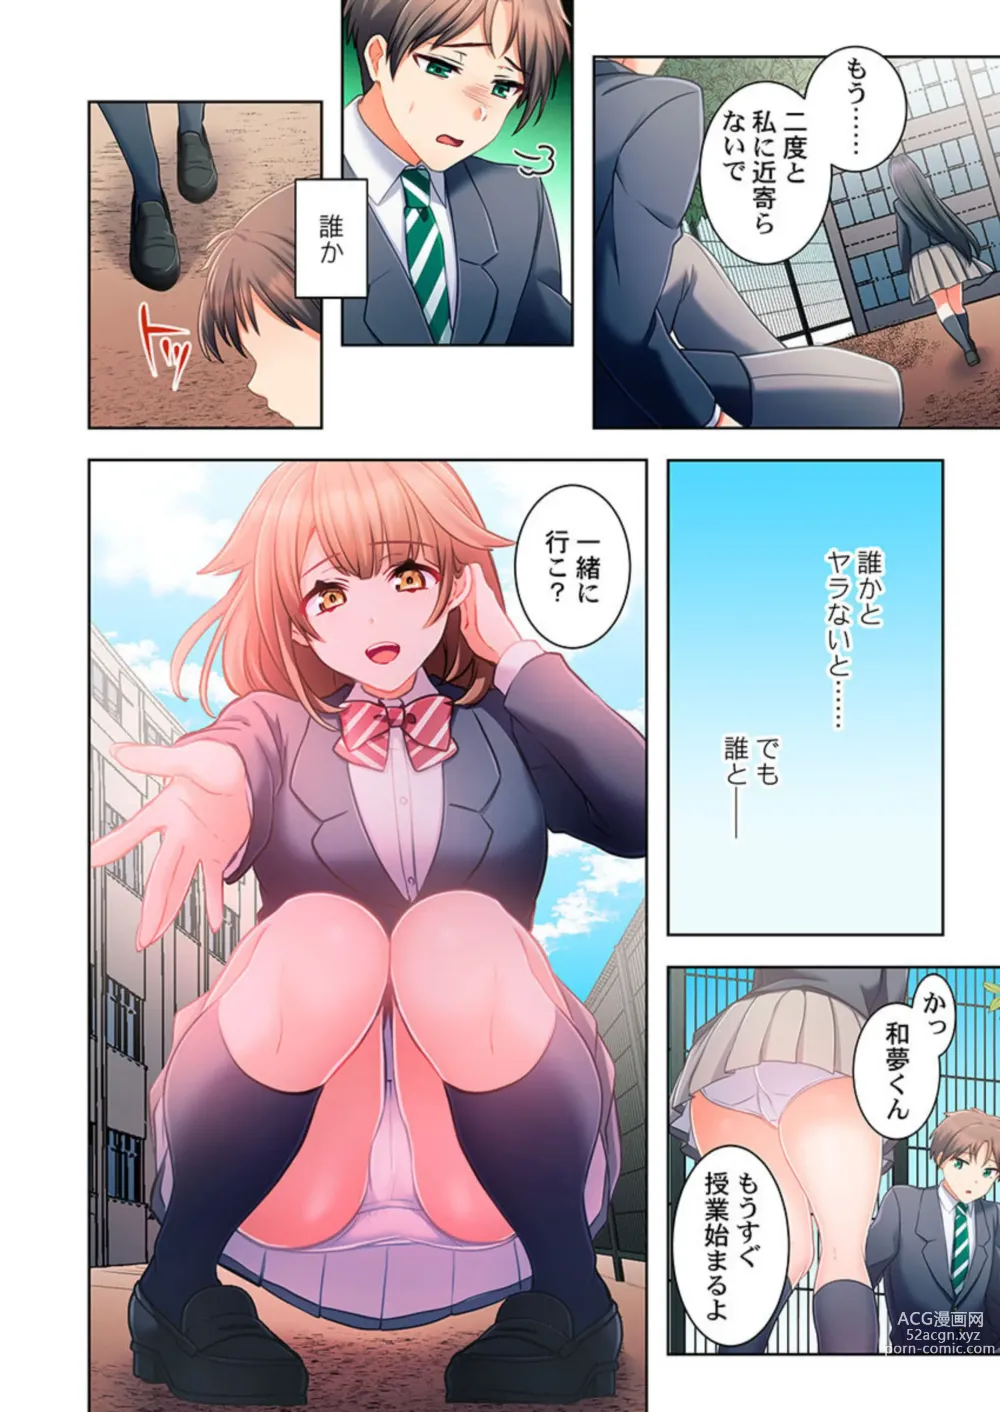 Page 50 of manga Yarebatobu 1